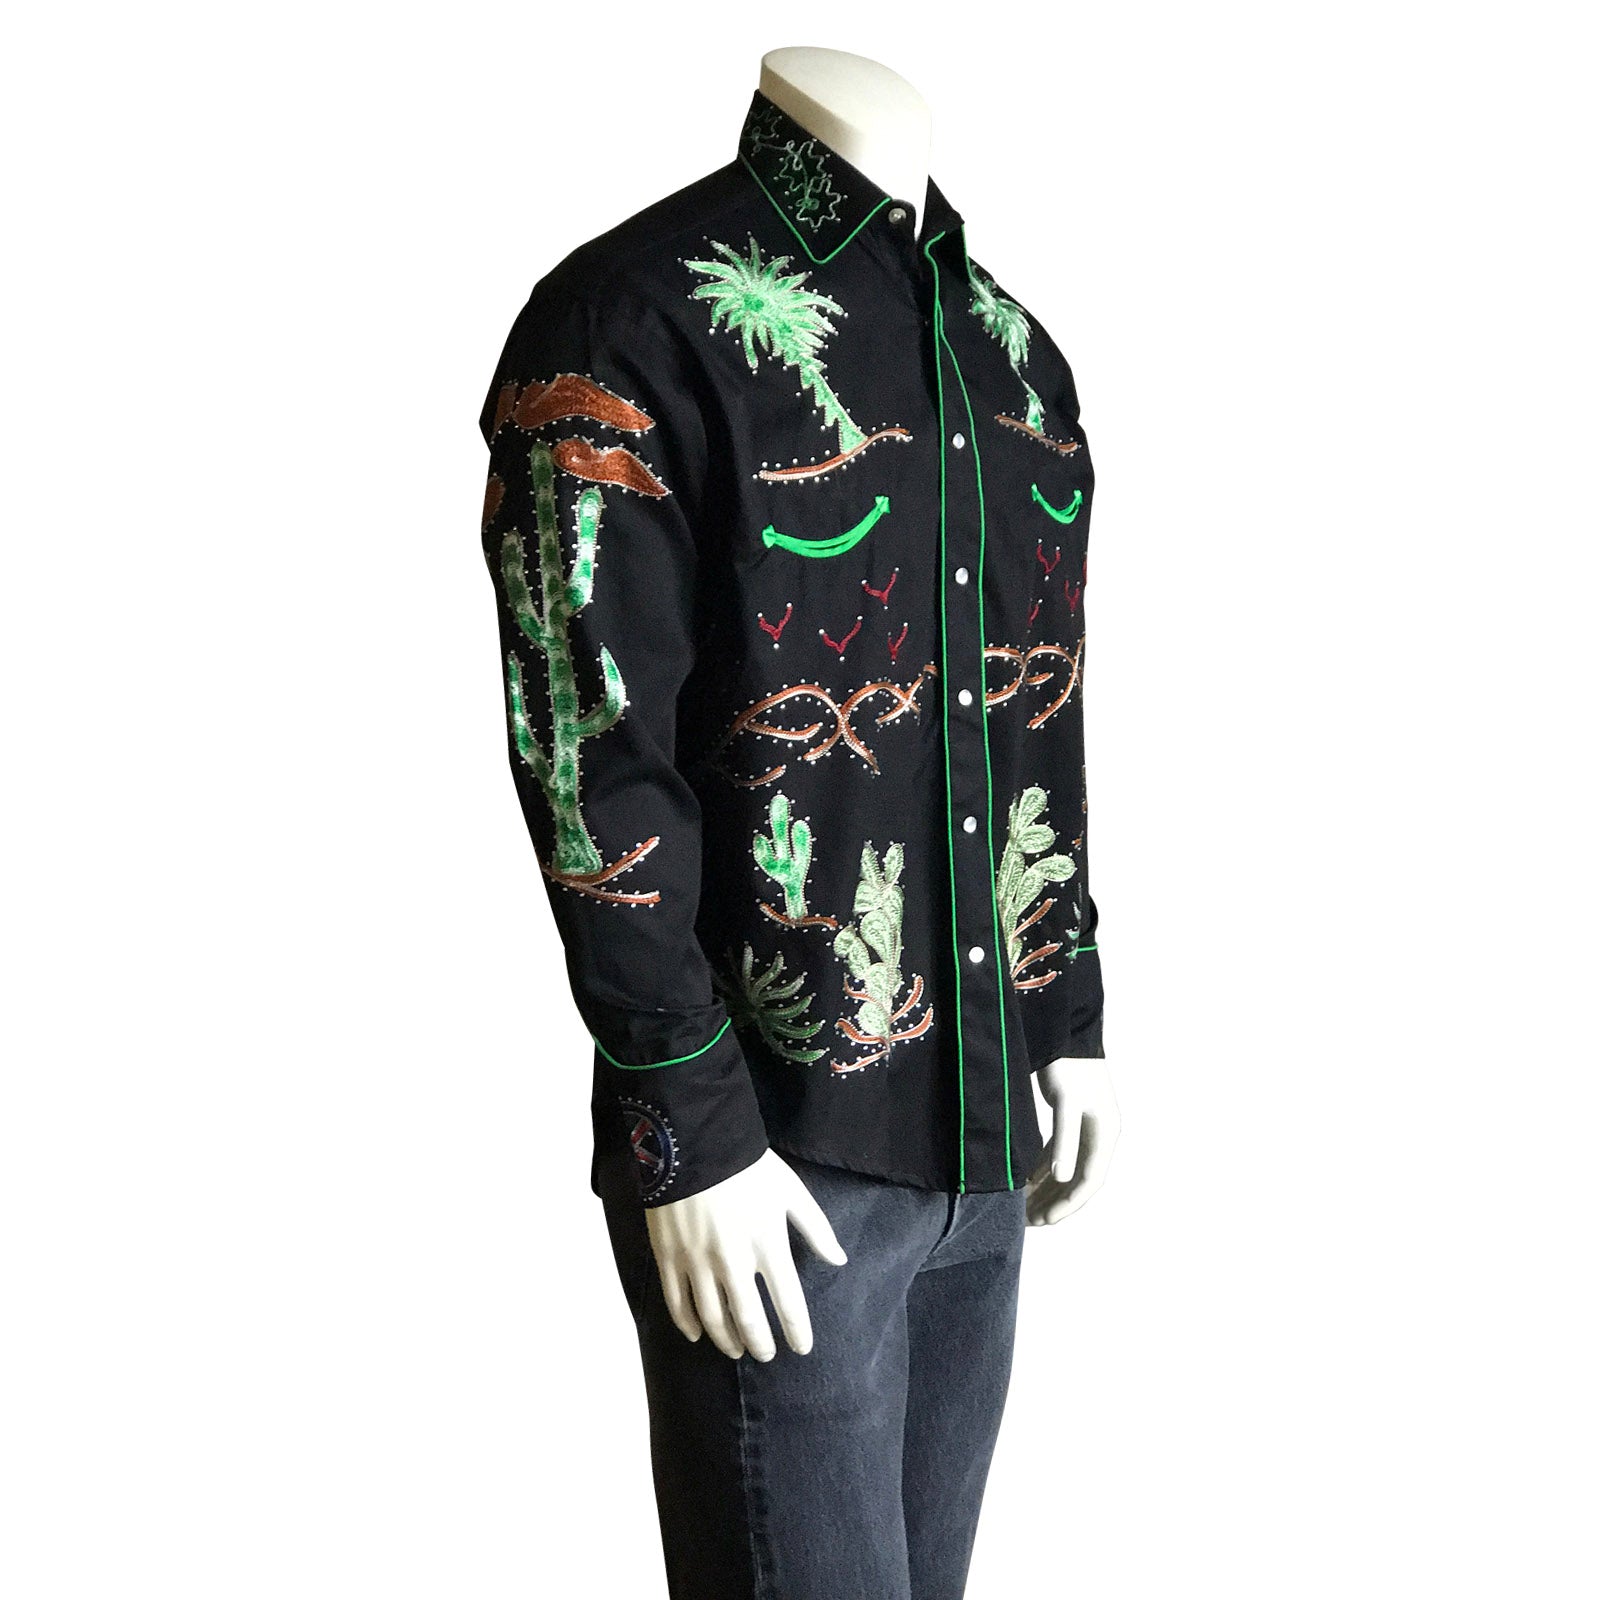 Men's Porter Wagoner Black Embroidered Western Shirt - Rockmount